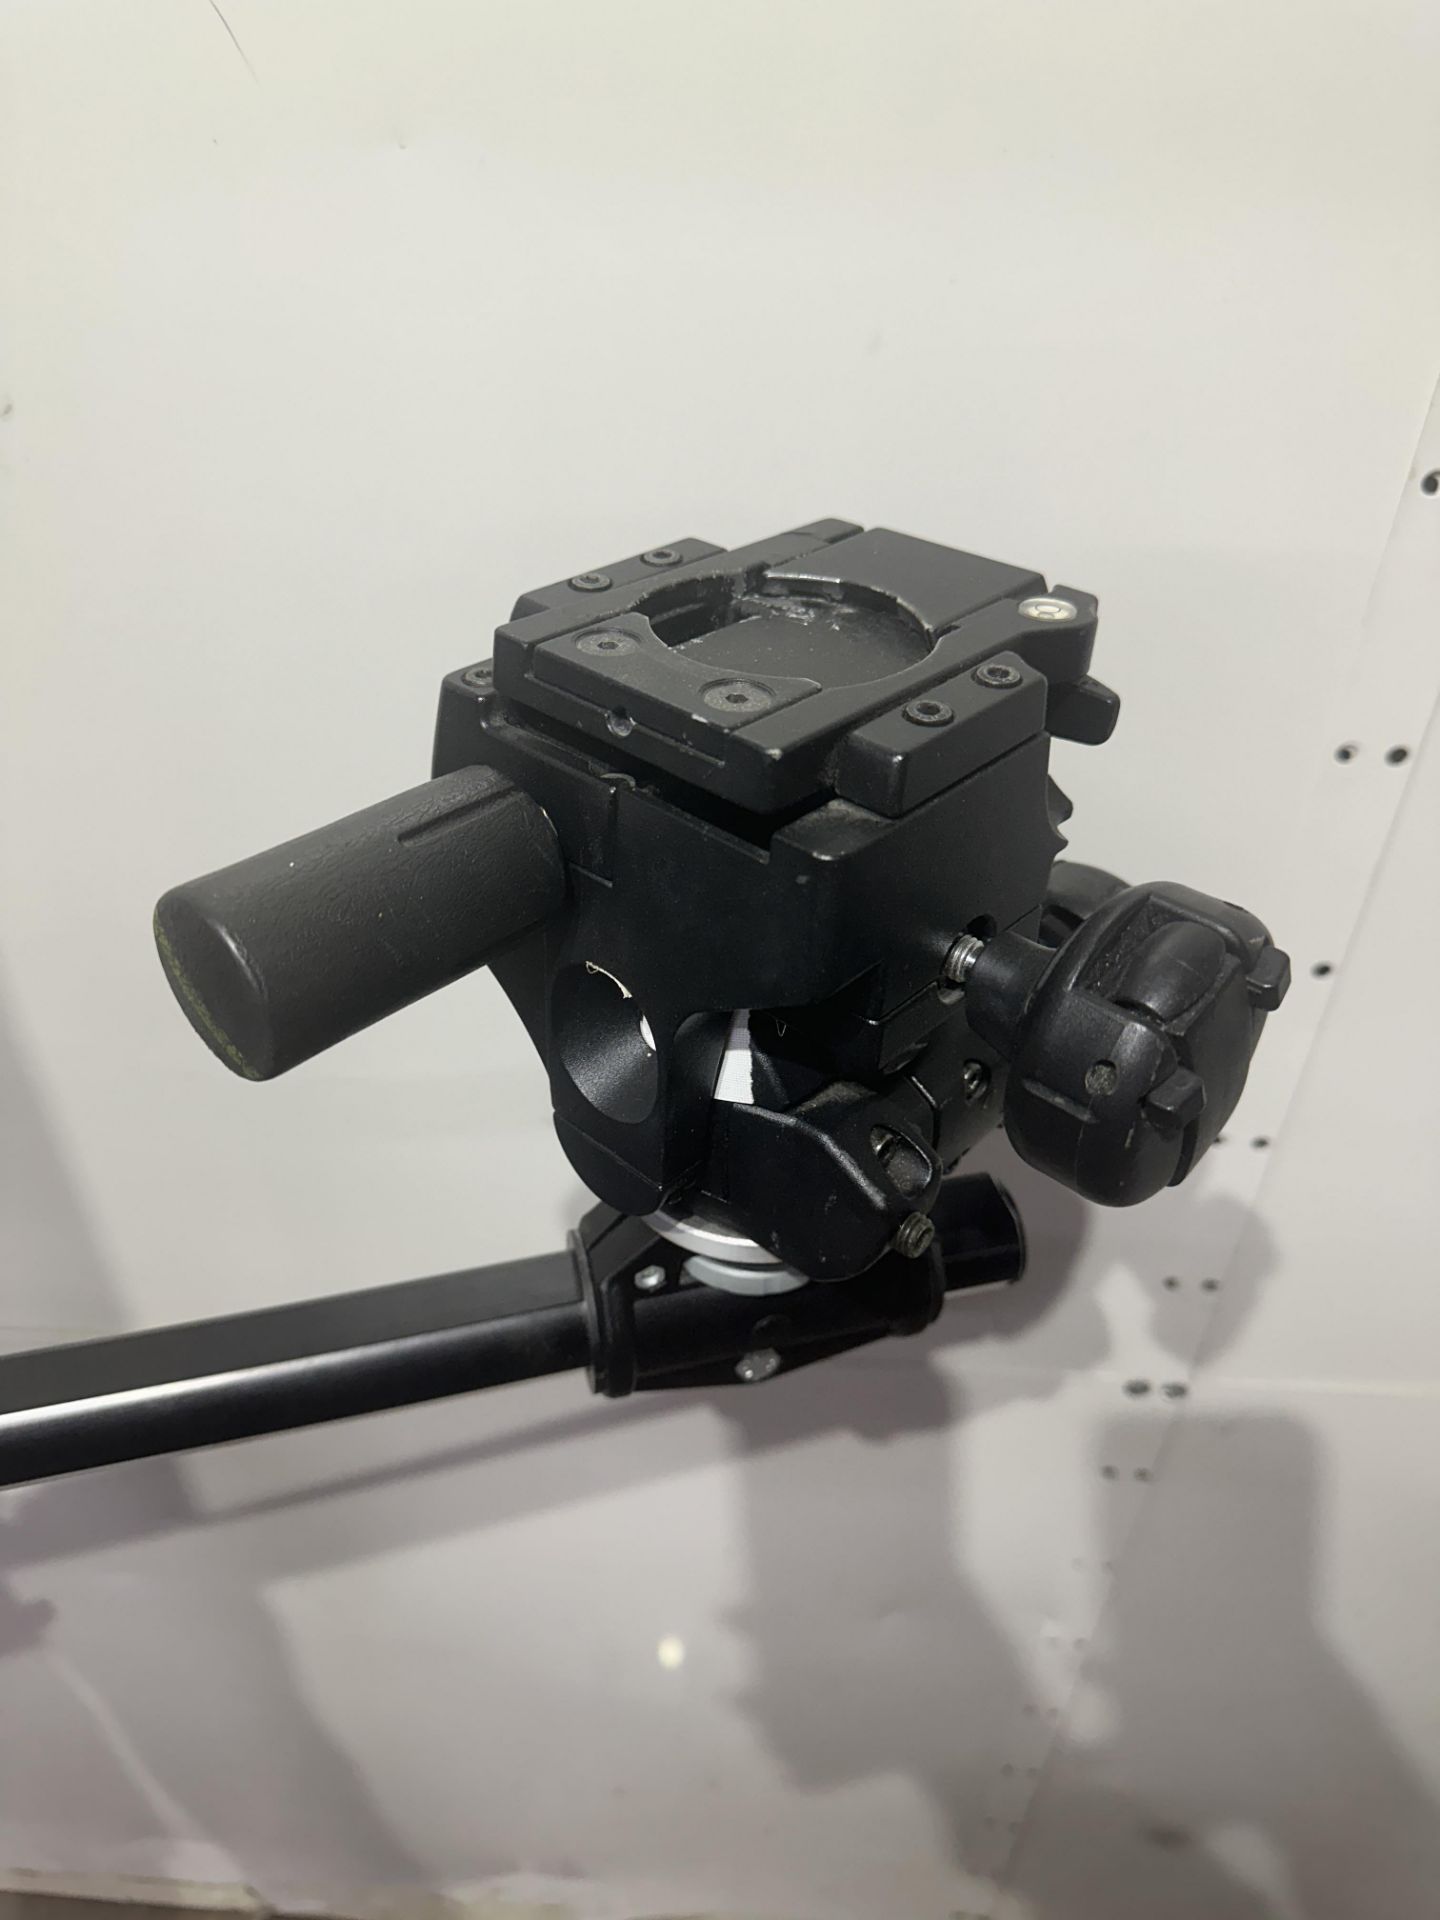 Manfrotto Mini Salon Studio camera stand 190 cm high with Monfrotto 410 geared head - Image 4 of 5